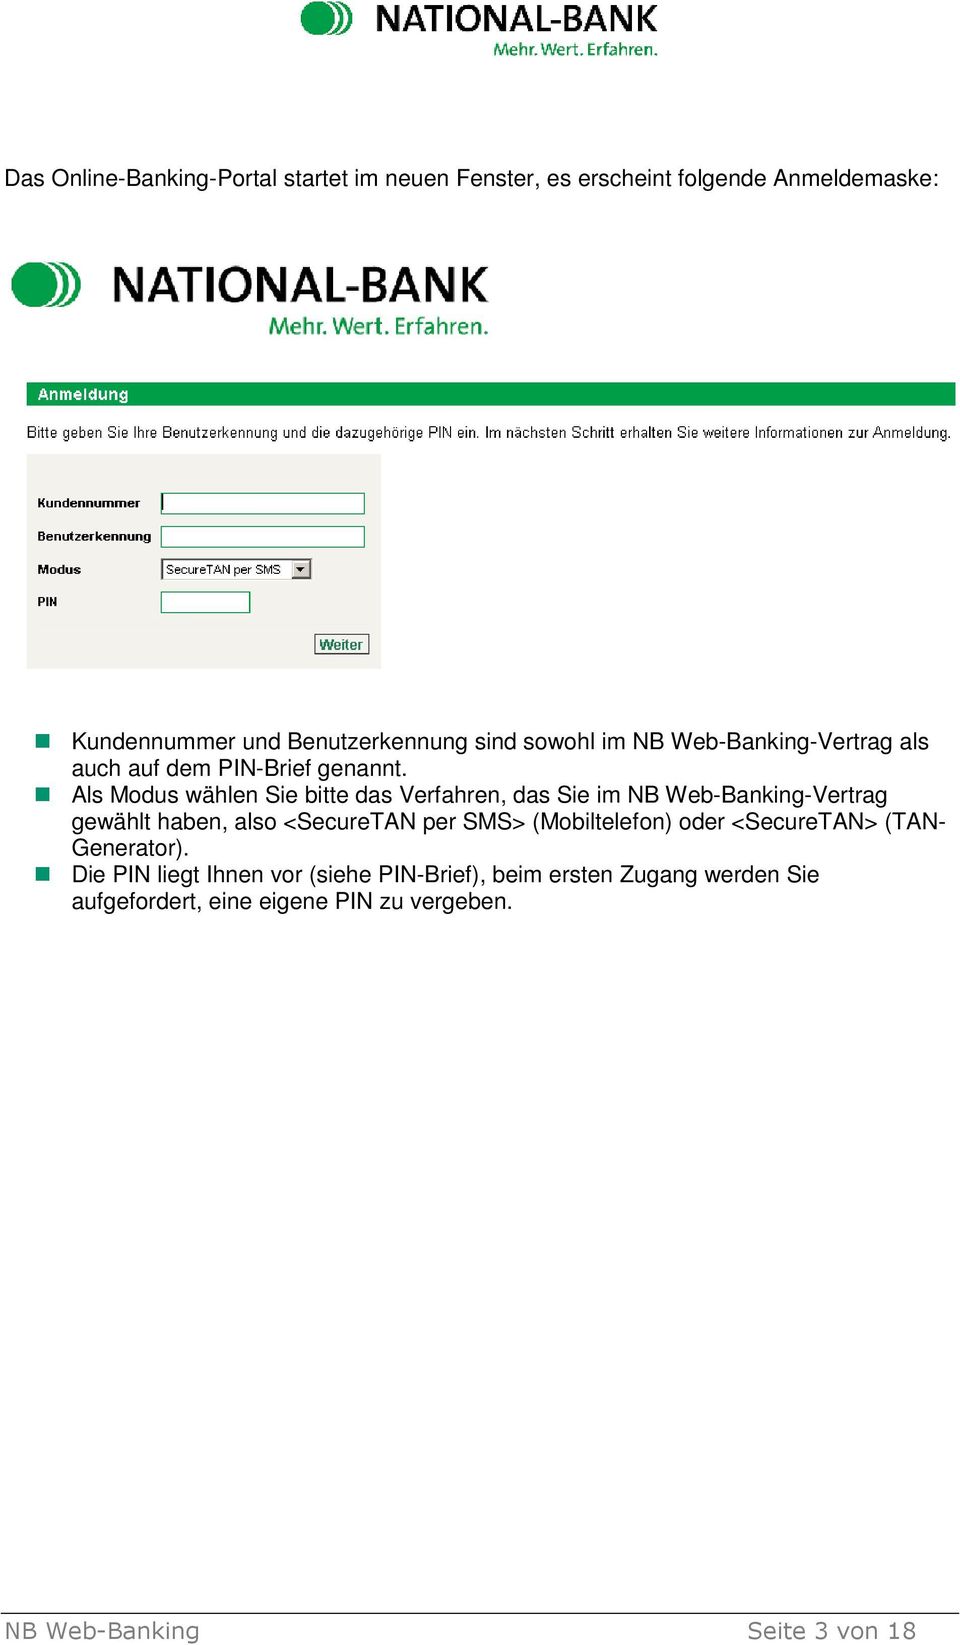 Als Modus wählen Sie bitte das Verfahren, das Sie im NB Web-Banking-Vertrag gewählt haben, also <SecureTAN per SMS>